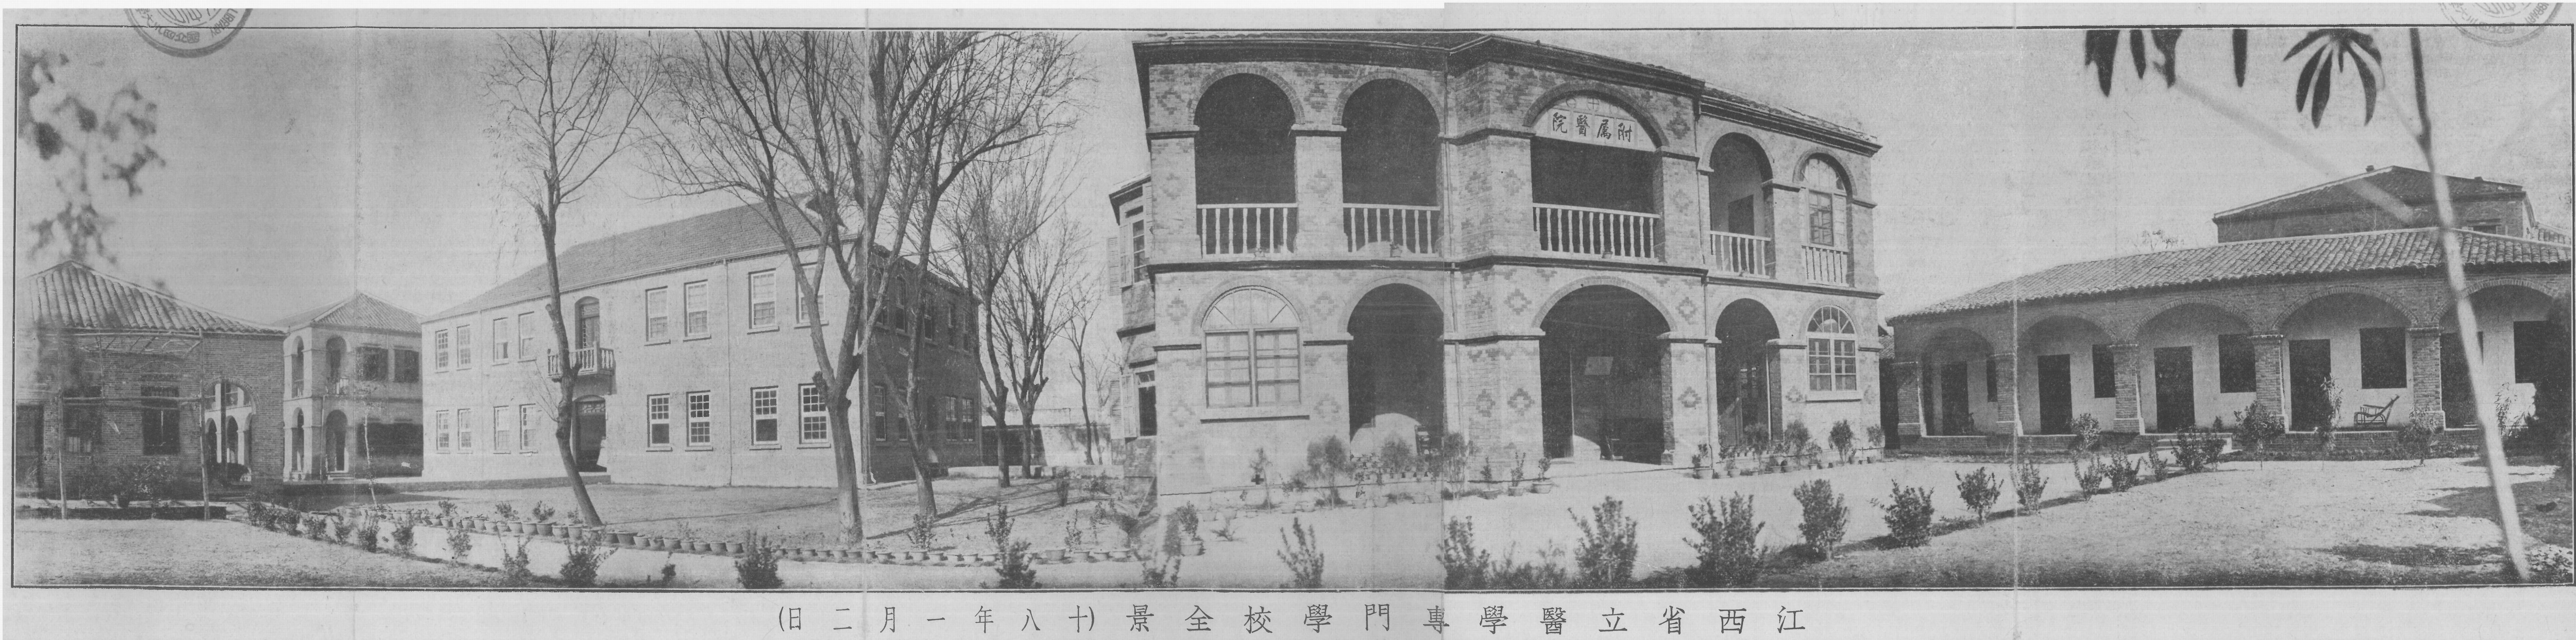 1929年江西省立医学专门学校校园全景图.jpg